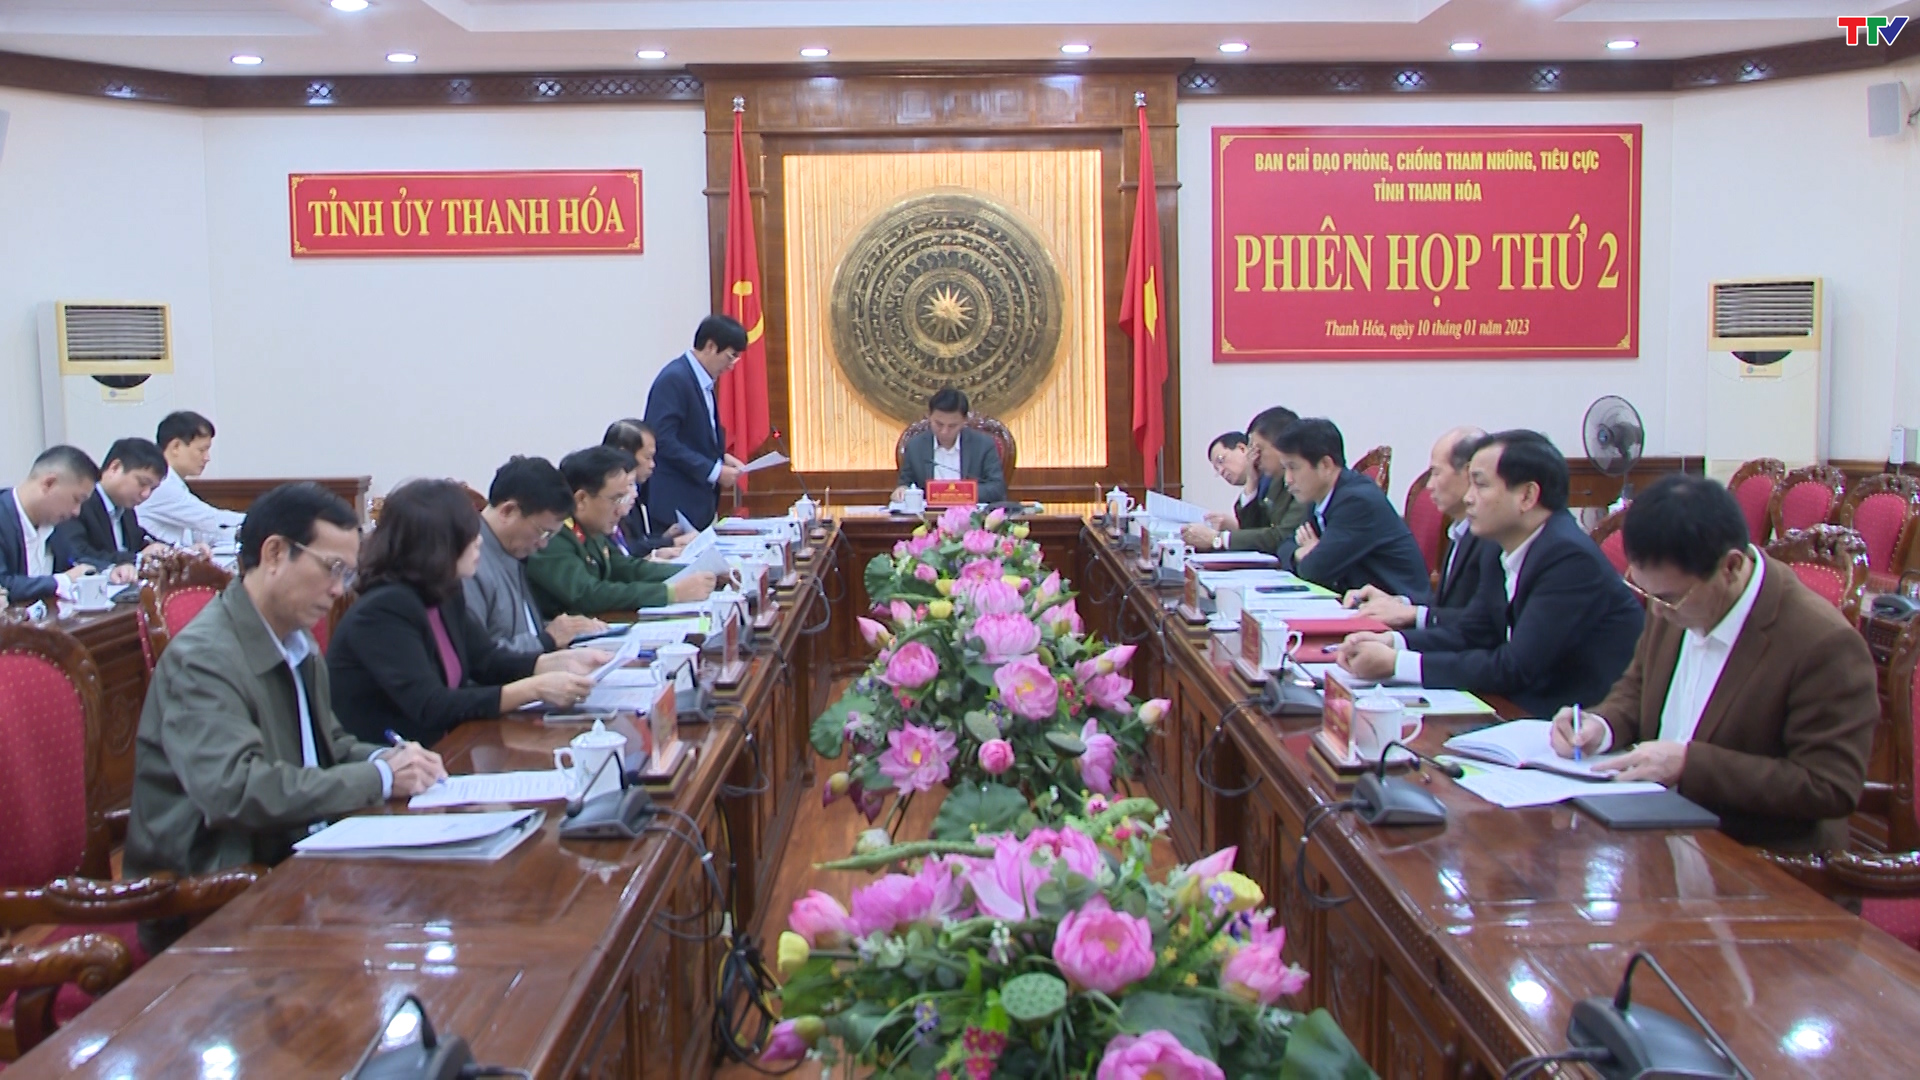 Phiên họp thứ hai Ban Chỉ đạo phòng, chống tham nhũng tiêu cực tỉnh Thanh Hoá - Ảnh 1.